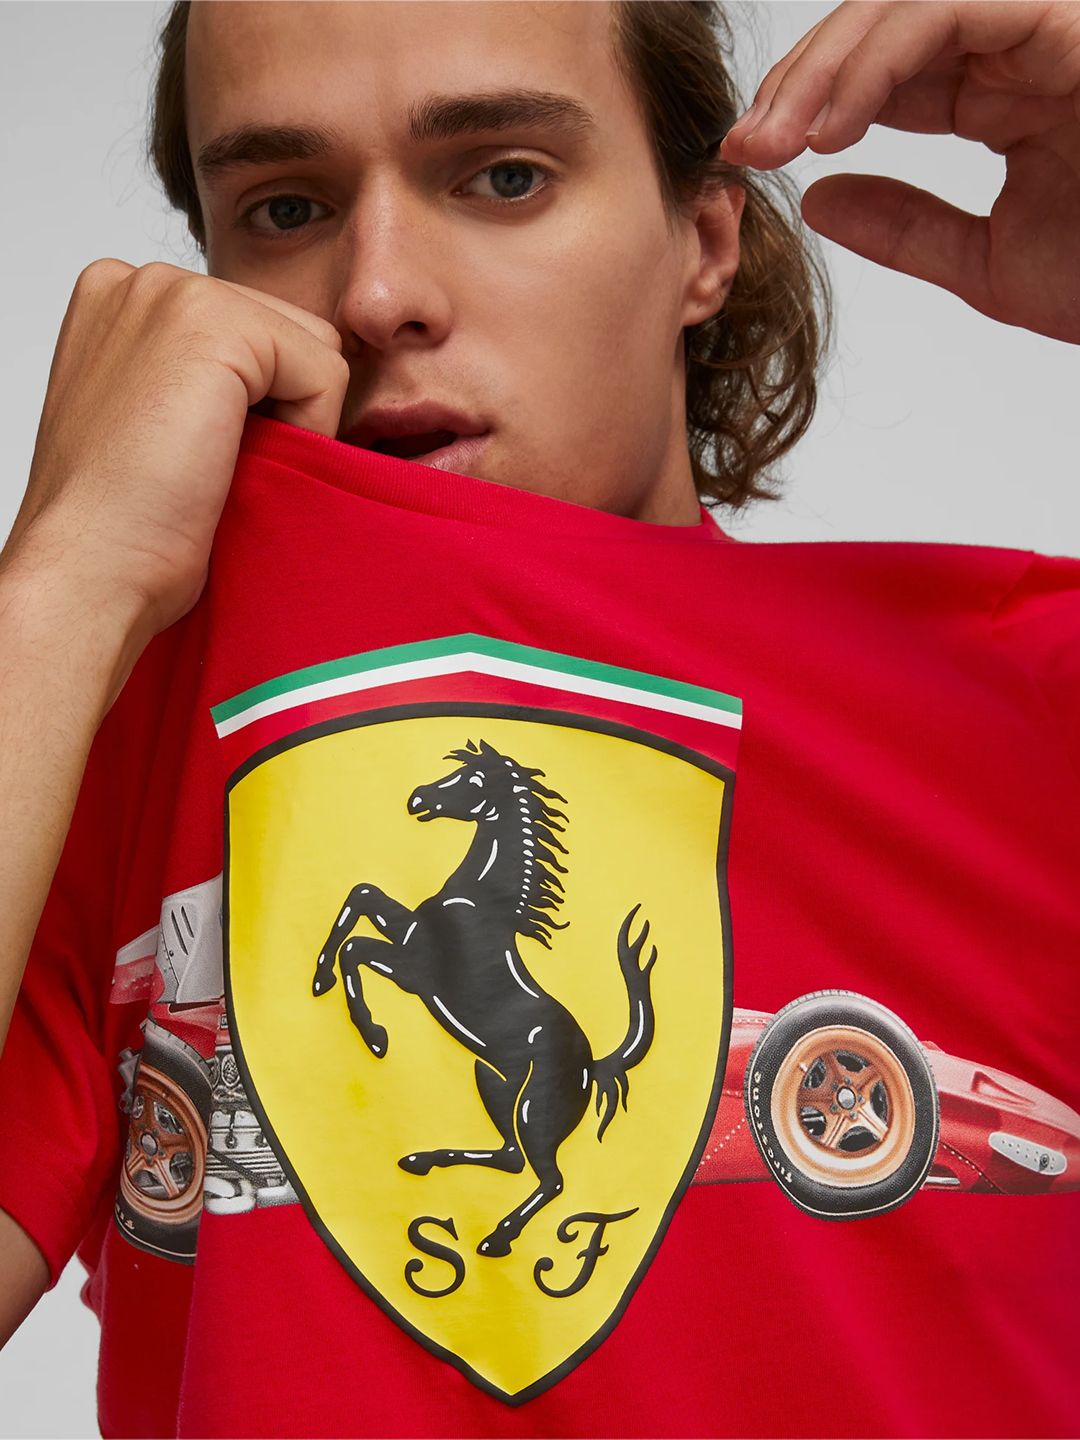 Buy Men Red Scuderia Ferrari Shield T-Shirt From Fancode Shop.